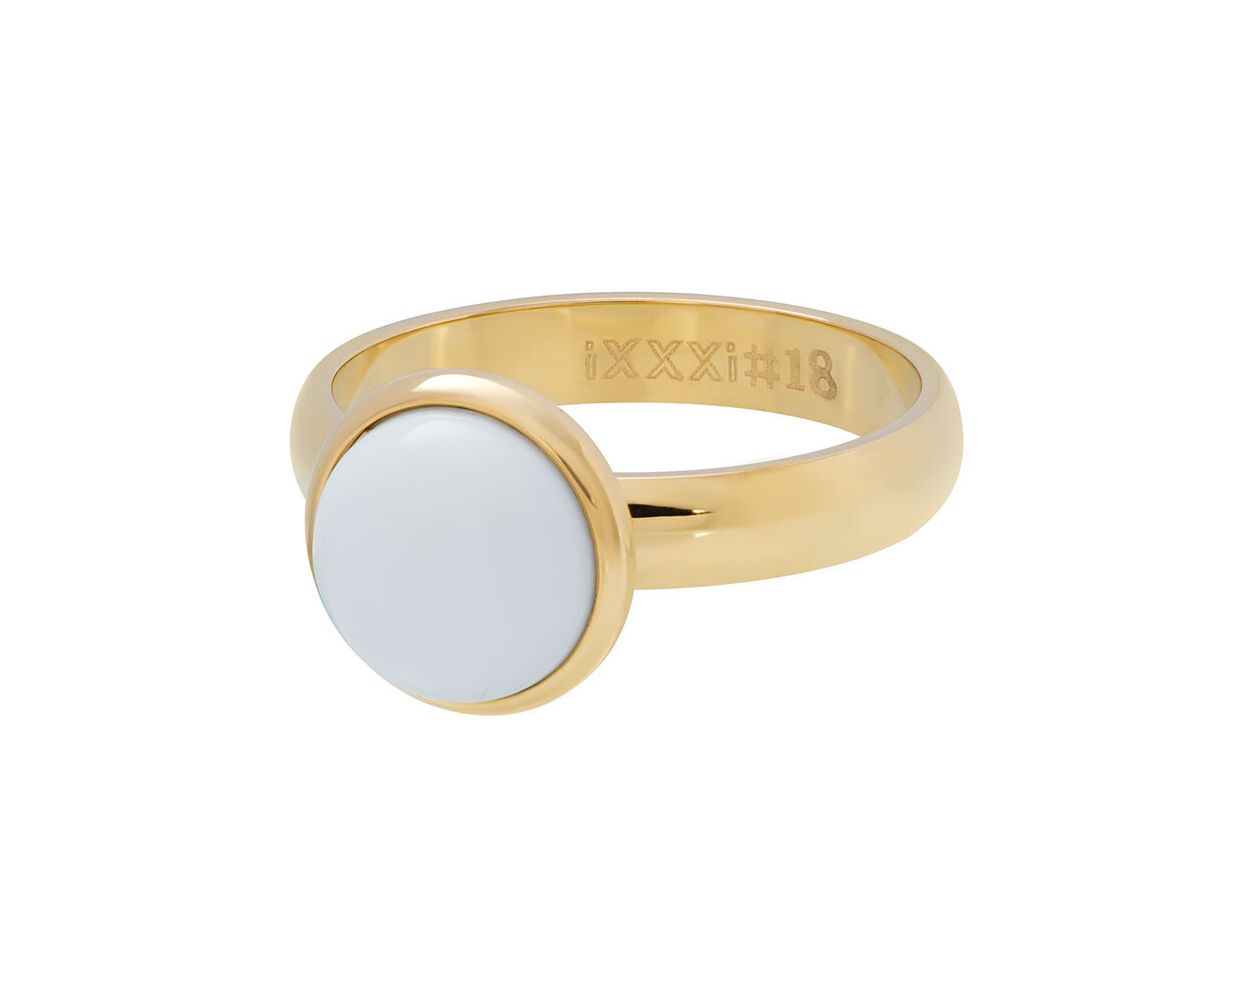 ixxxi ring stone white gold R4302-1